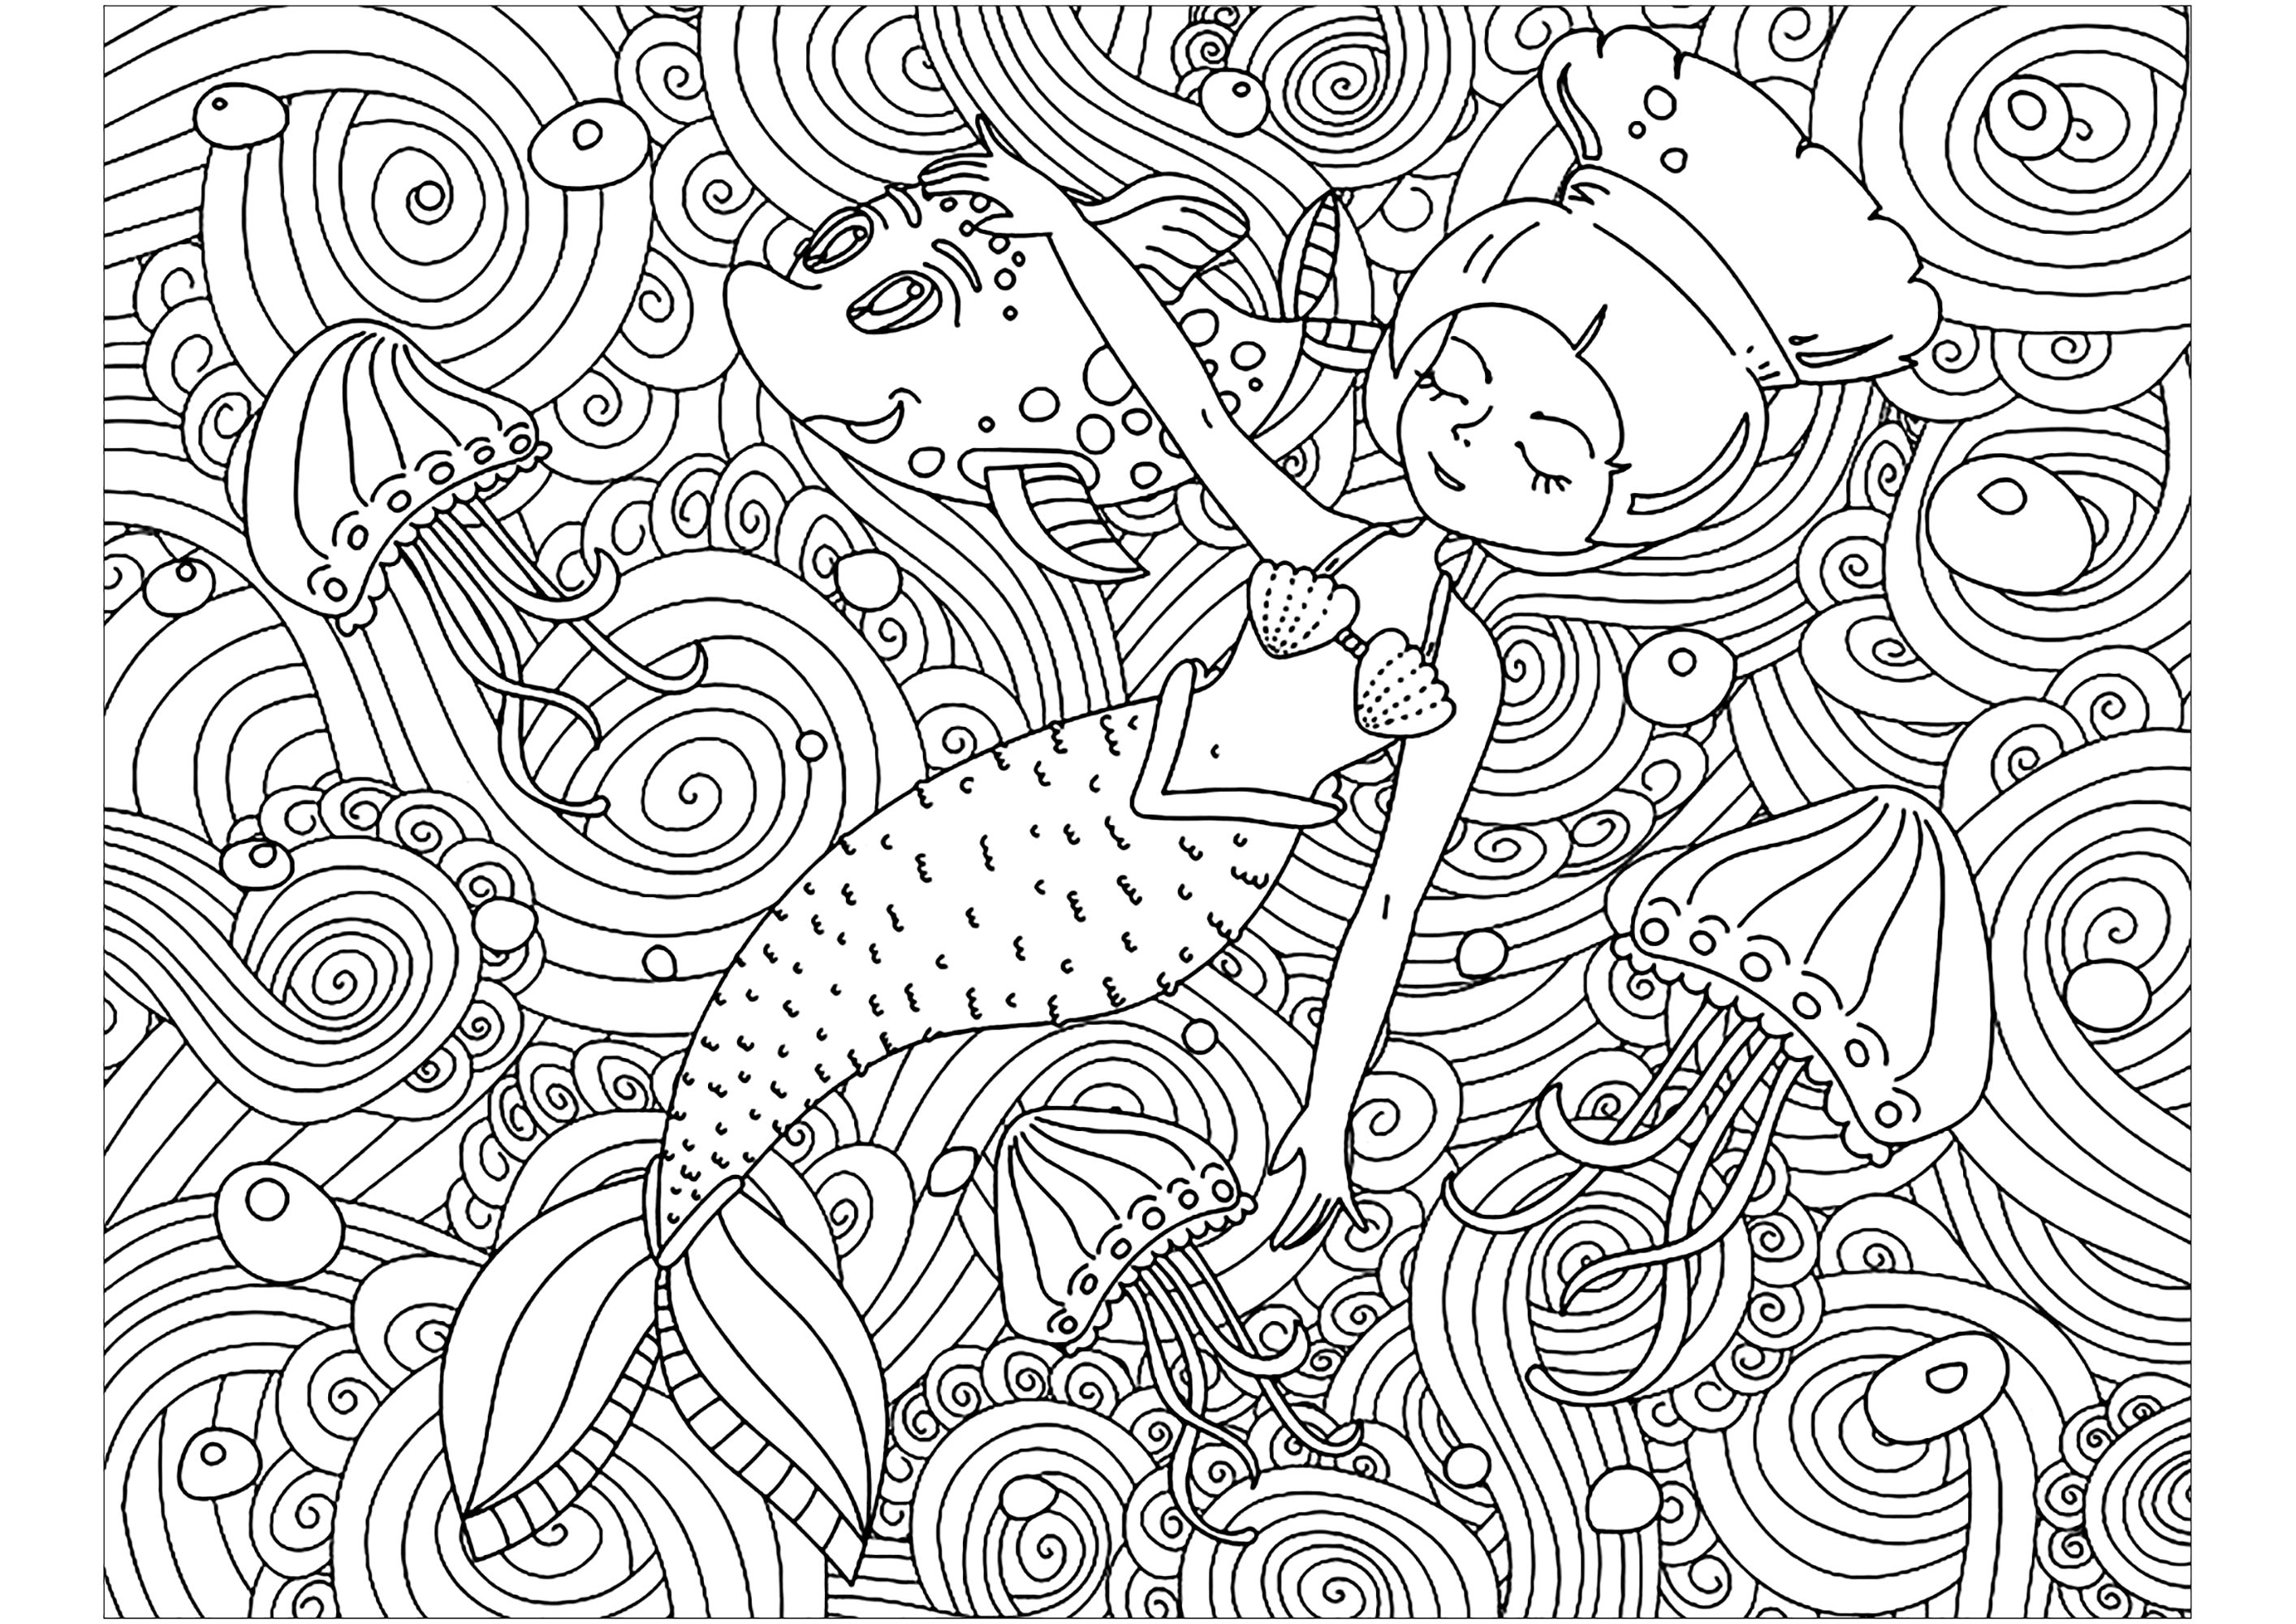 Meerjungfrau und hübsche Muster. Malen Sie diese kleine Meerjungfrau aus, die friedlich in einem Meer voller schöner, verschlungener Muster schläft, Quelle : 123rf   Künstler : Lexver